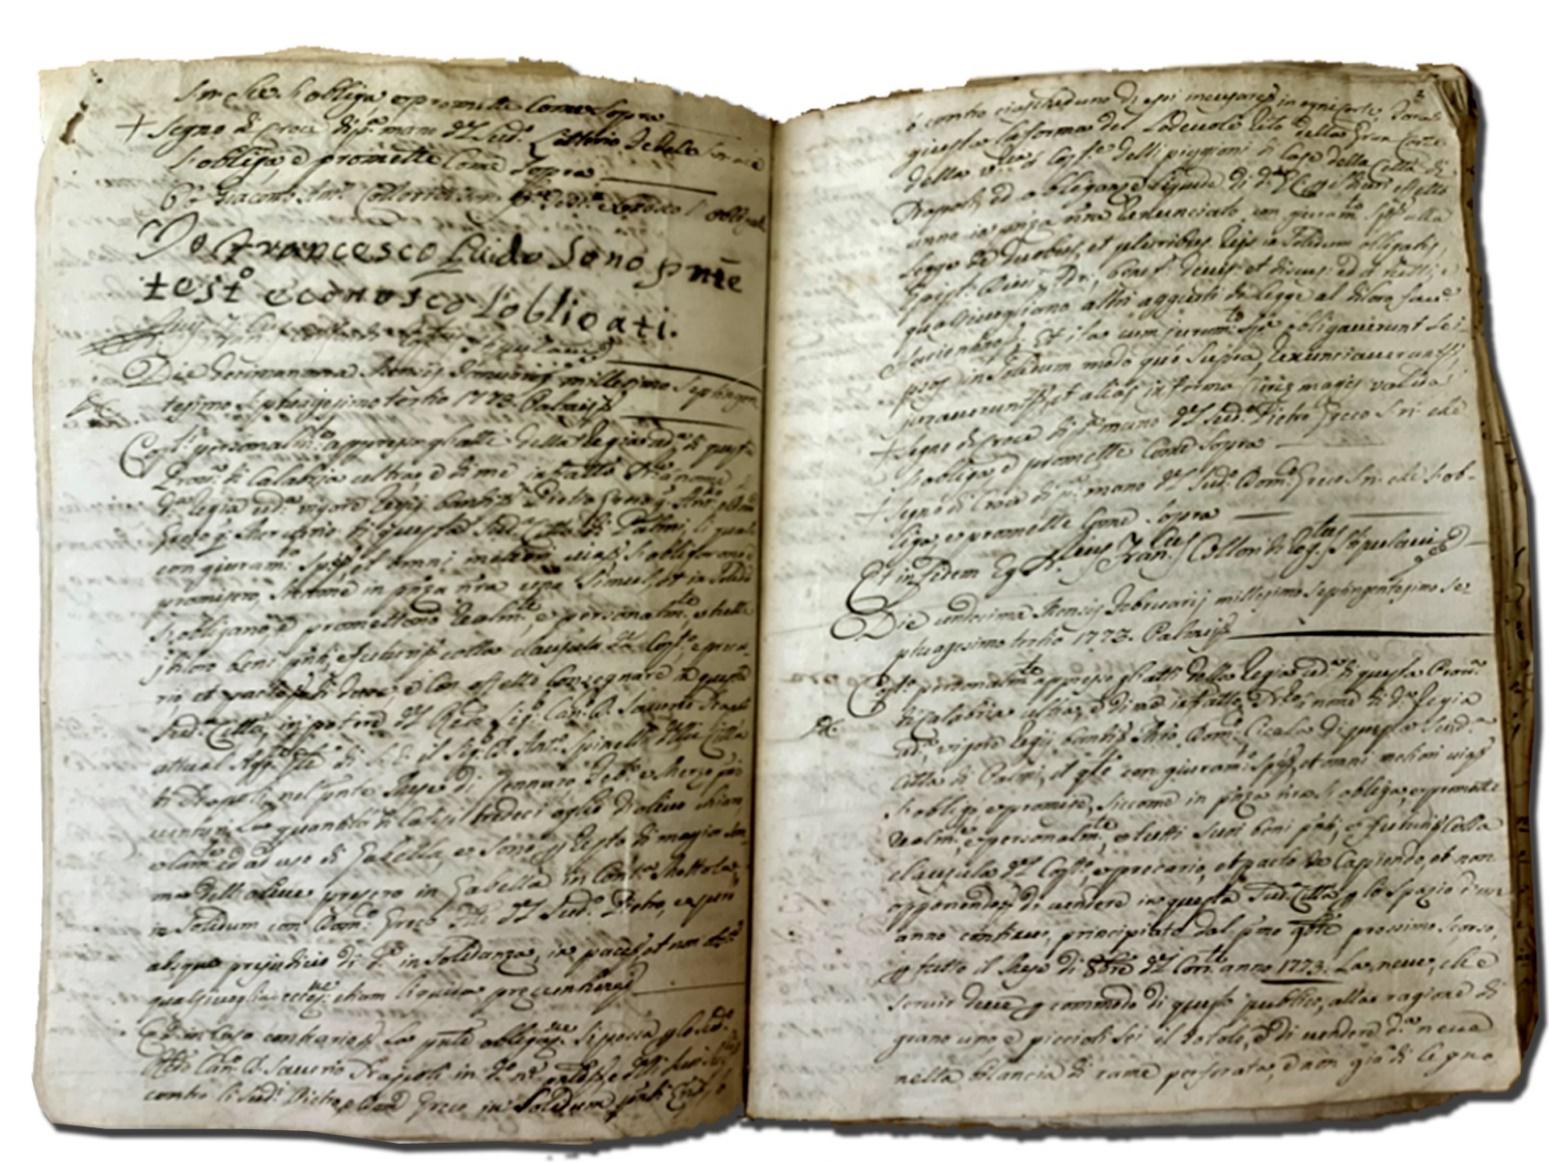 Palmi, 11 febbraio 1773 AS SEZIONE DI PALMI, Fondo Notarile, Notaio Francesco Colloridi, b. 137 vol. 1419 f. 3r